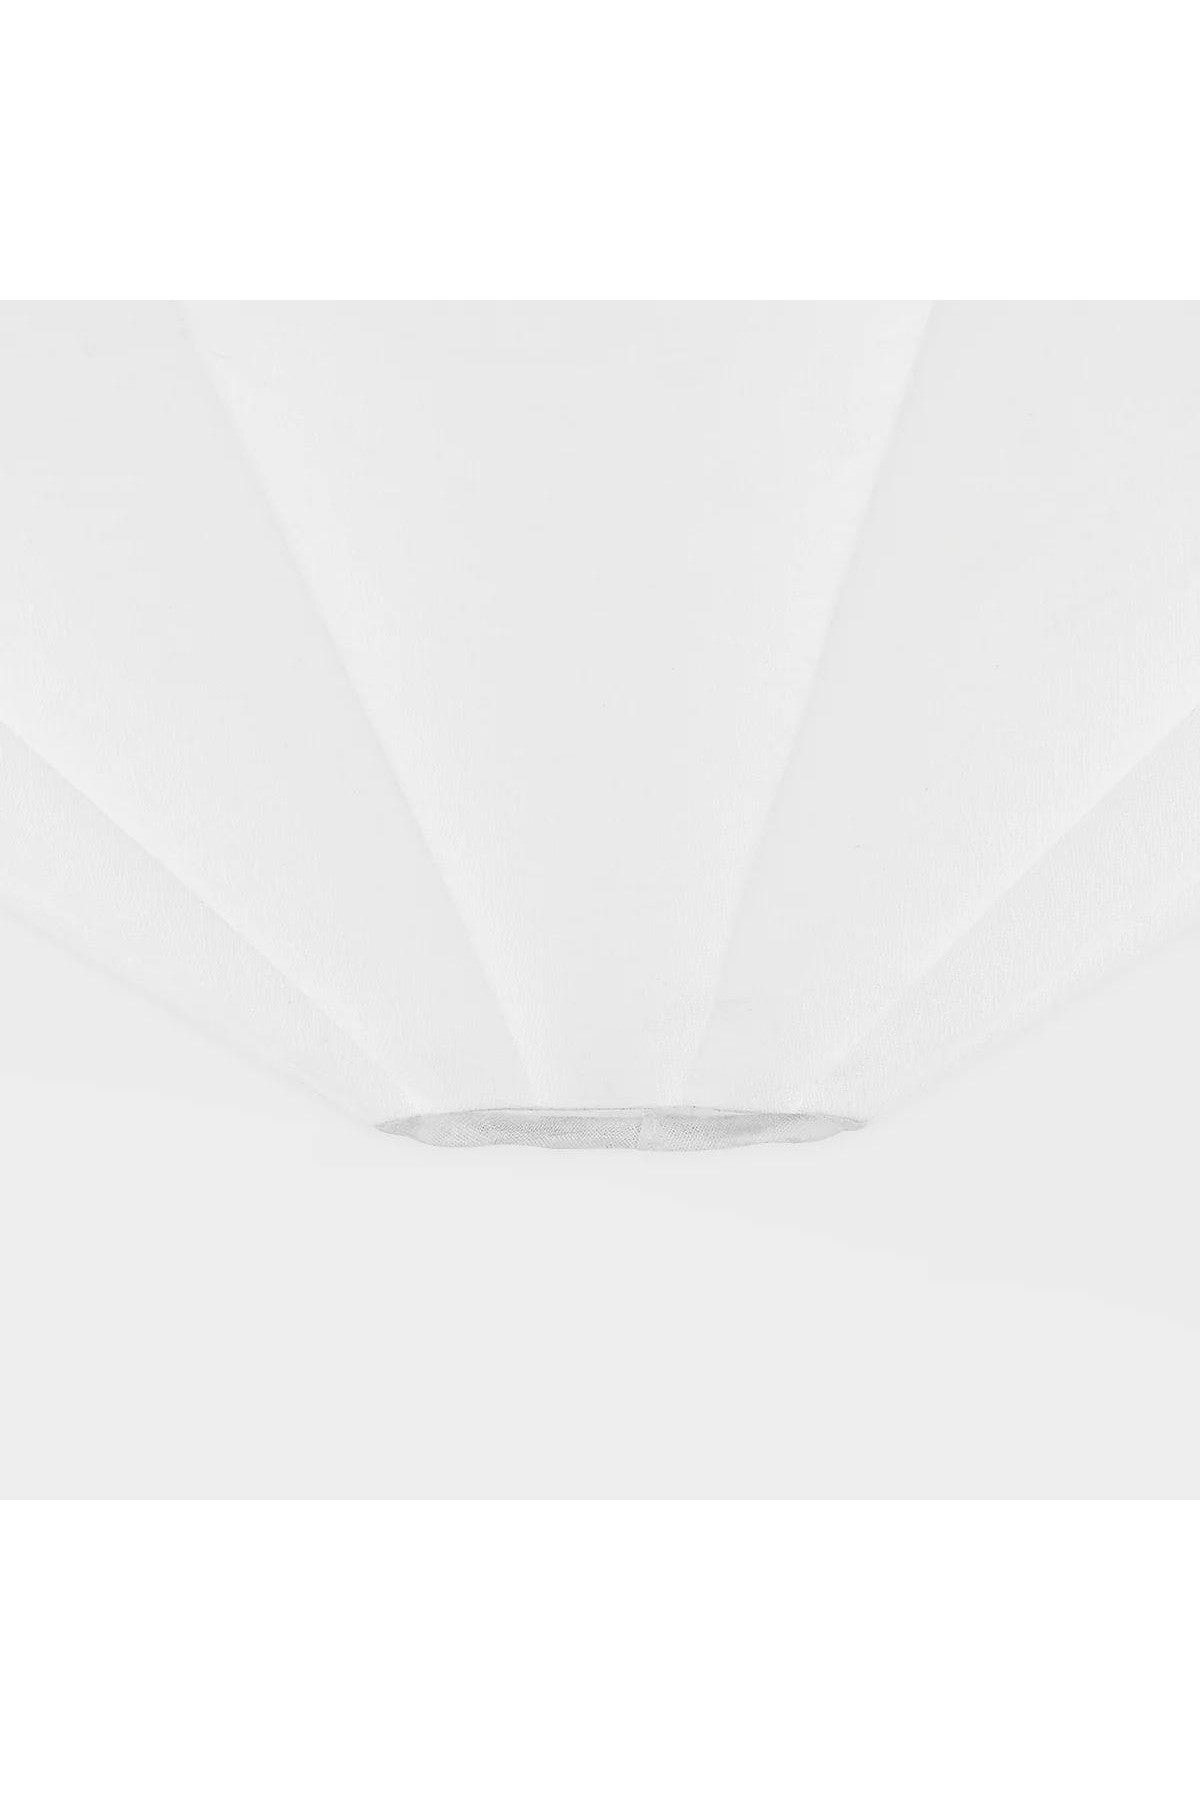 Anala Flush Ceiling Light